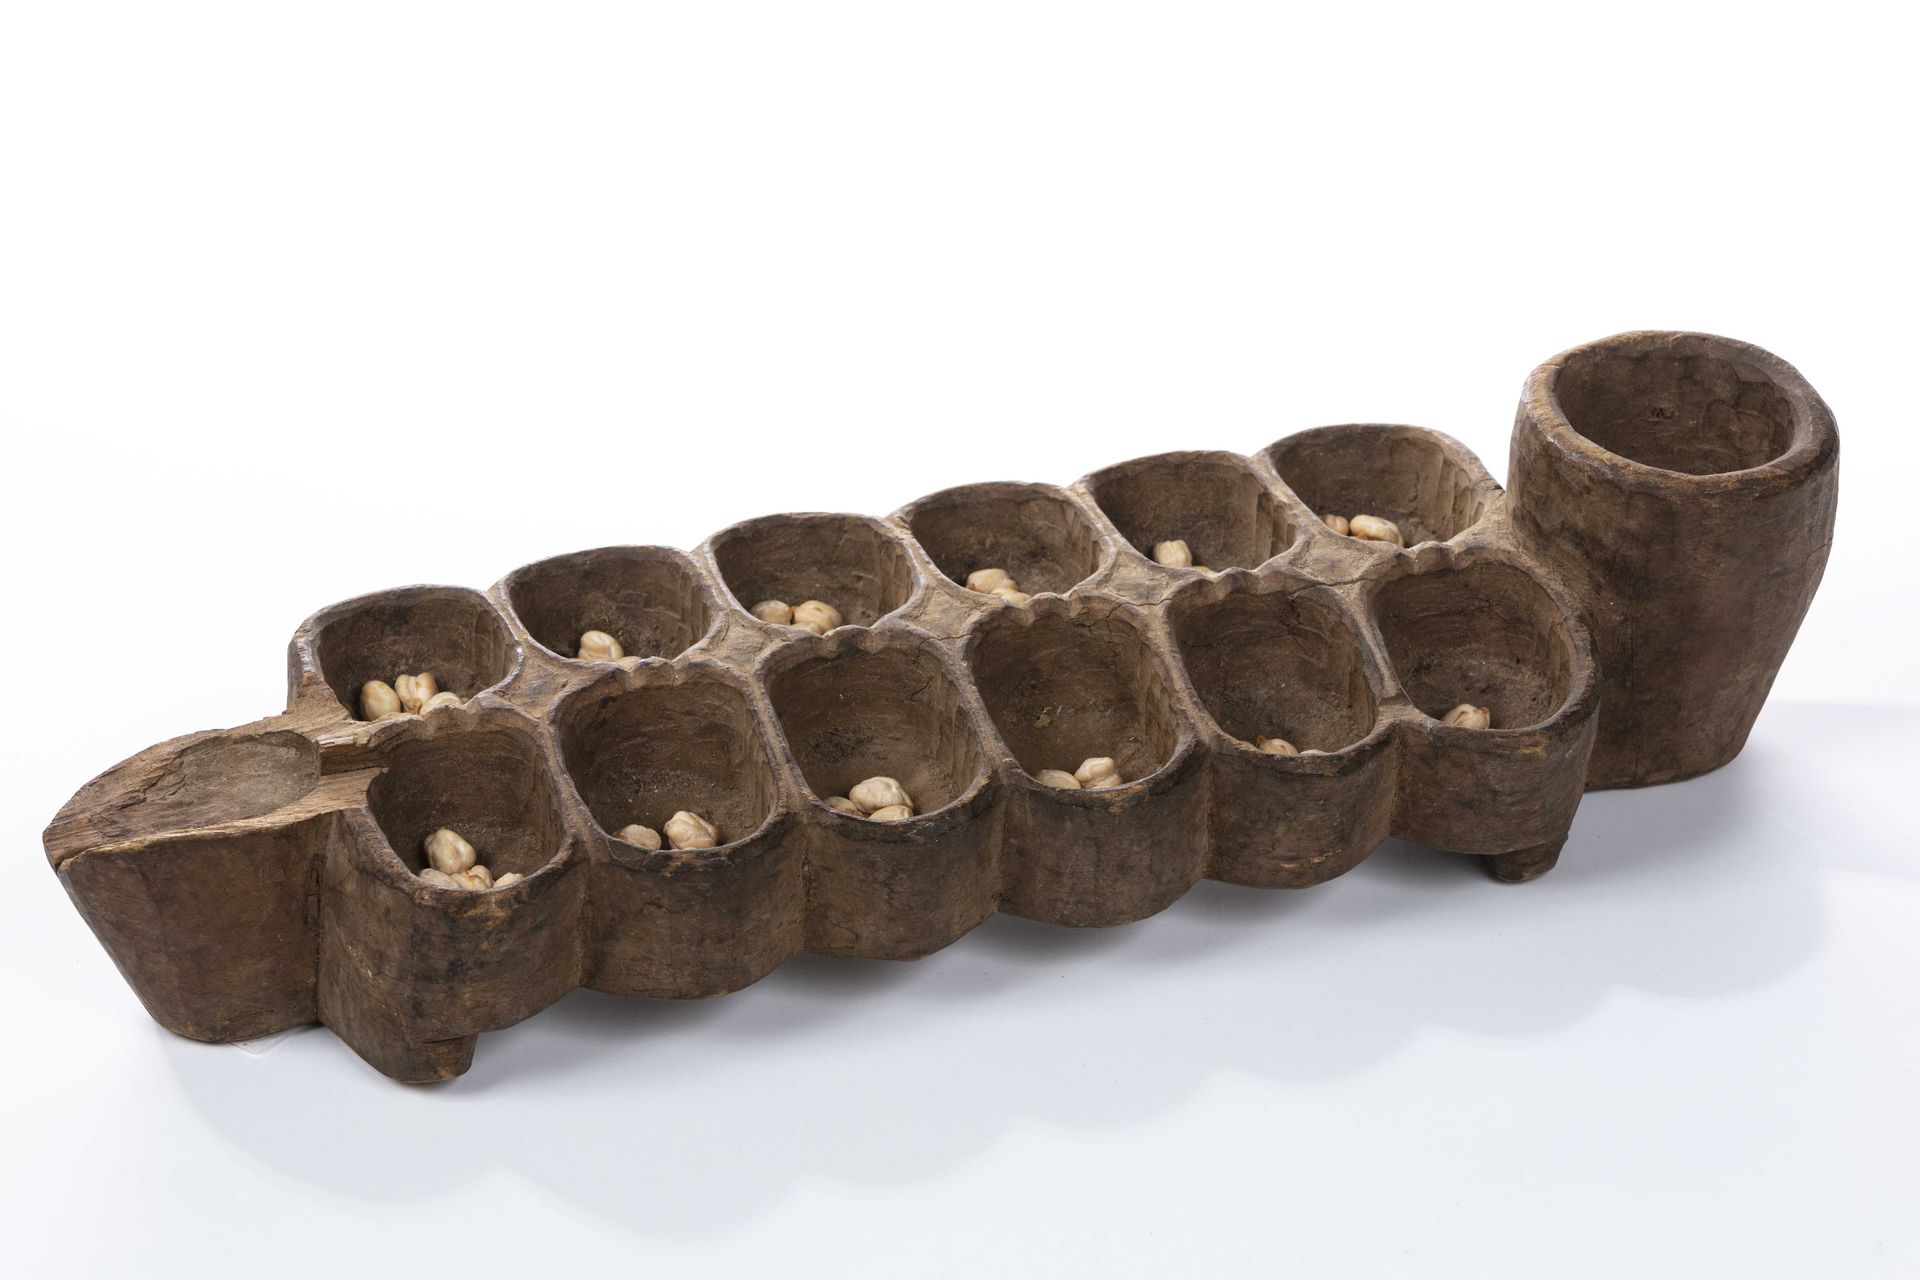 Null 阿瓦莱丹游戏，象牙海岸
木材，藤本植物果实
长：37厘米
说明：阿瓦勒在丹语中被称为 "ma kpon"。棋盘由四条小腿支撑，分为两行六个格子，玩家在&hellip;